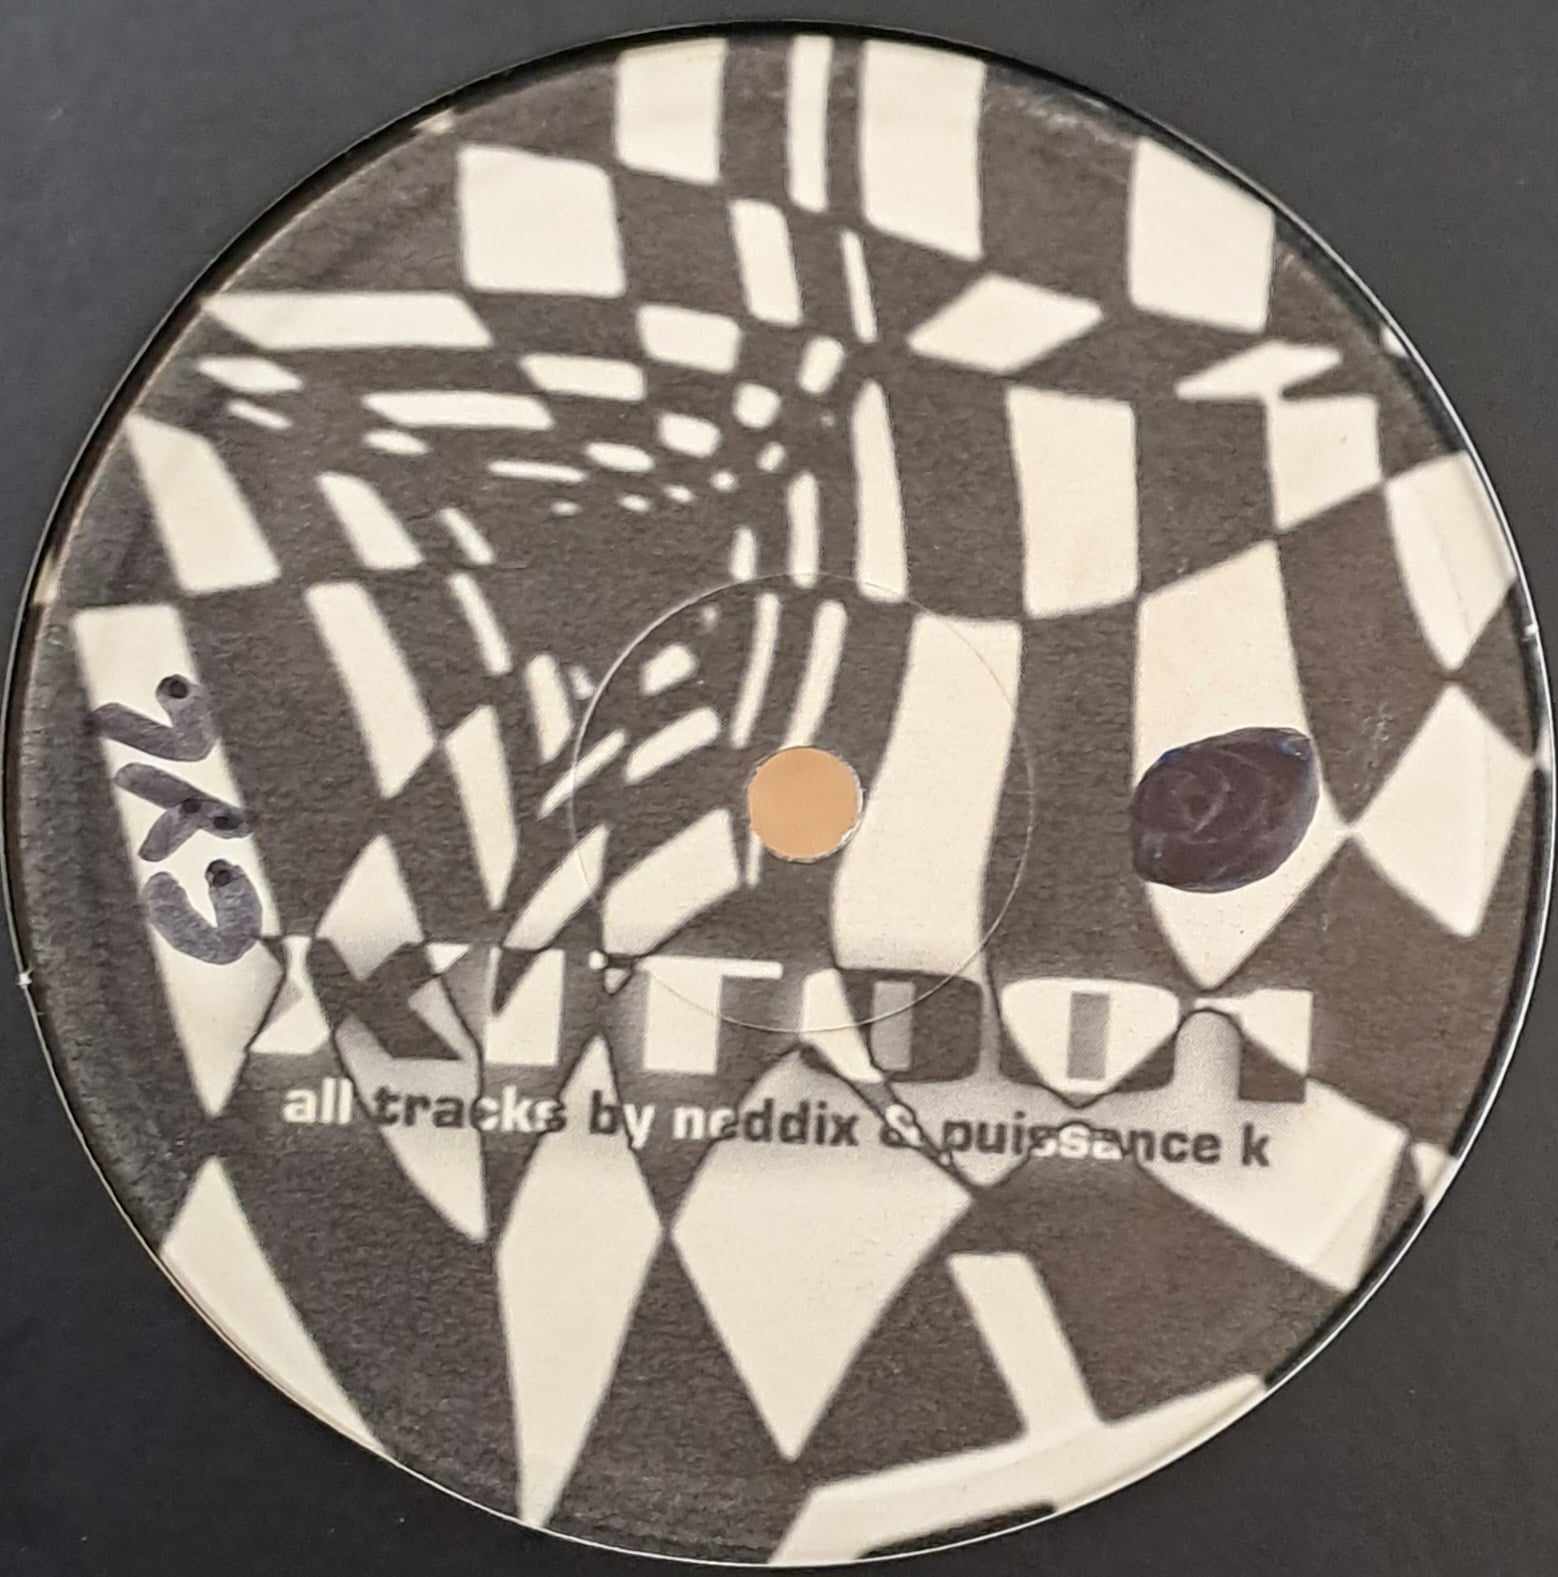 Kronic Records 001 - vinyle freetekno